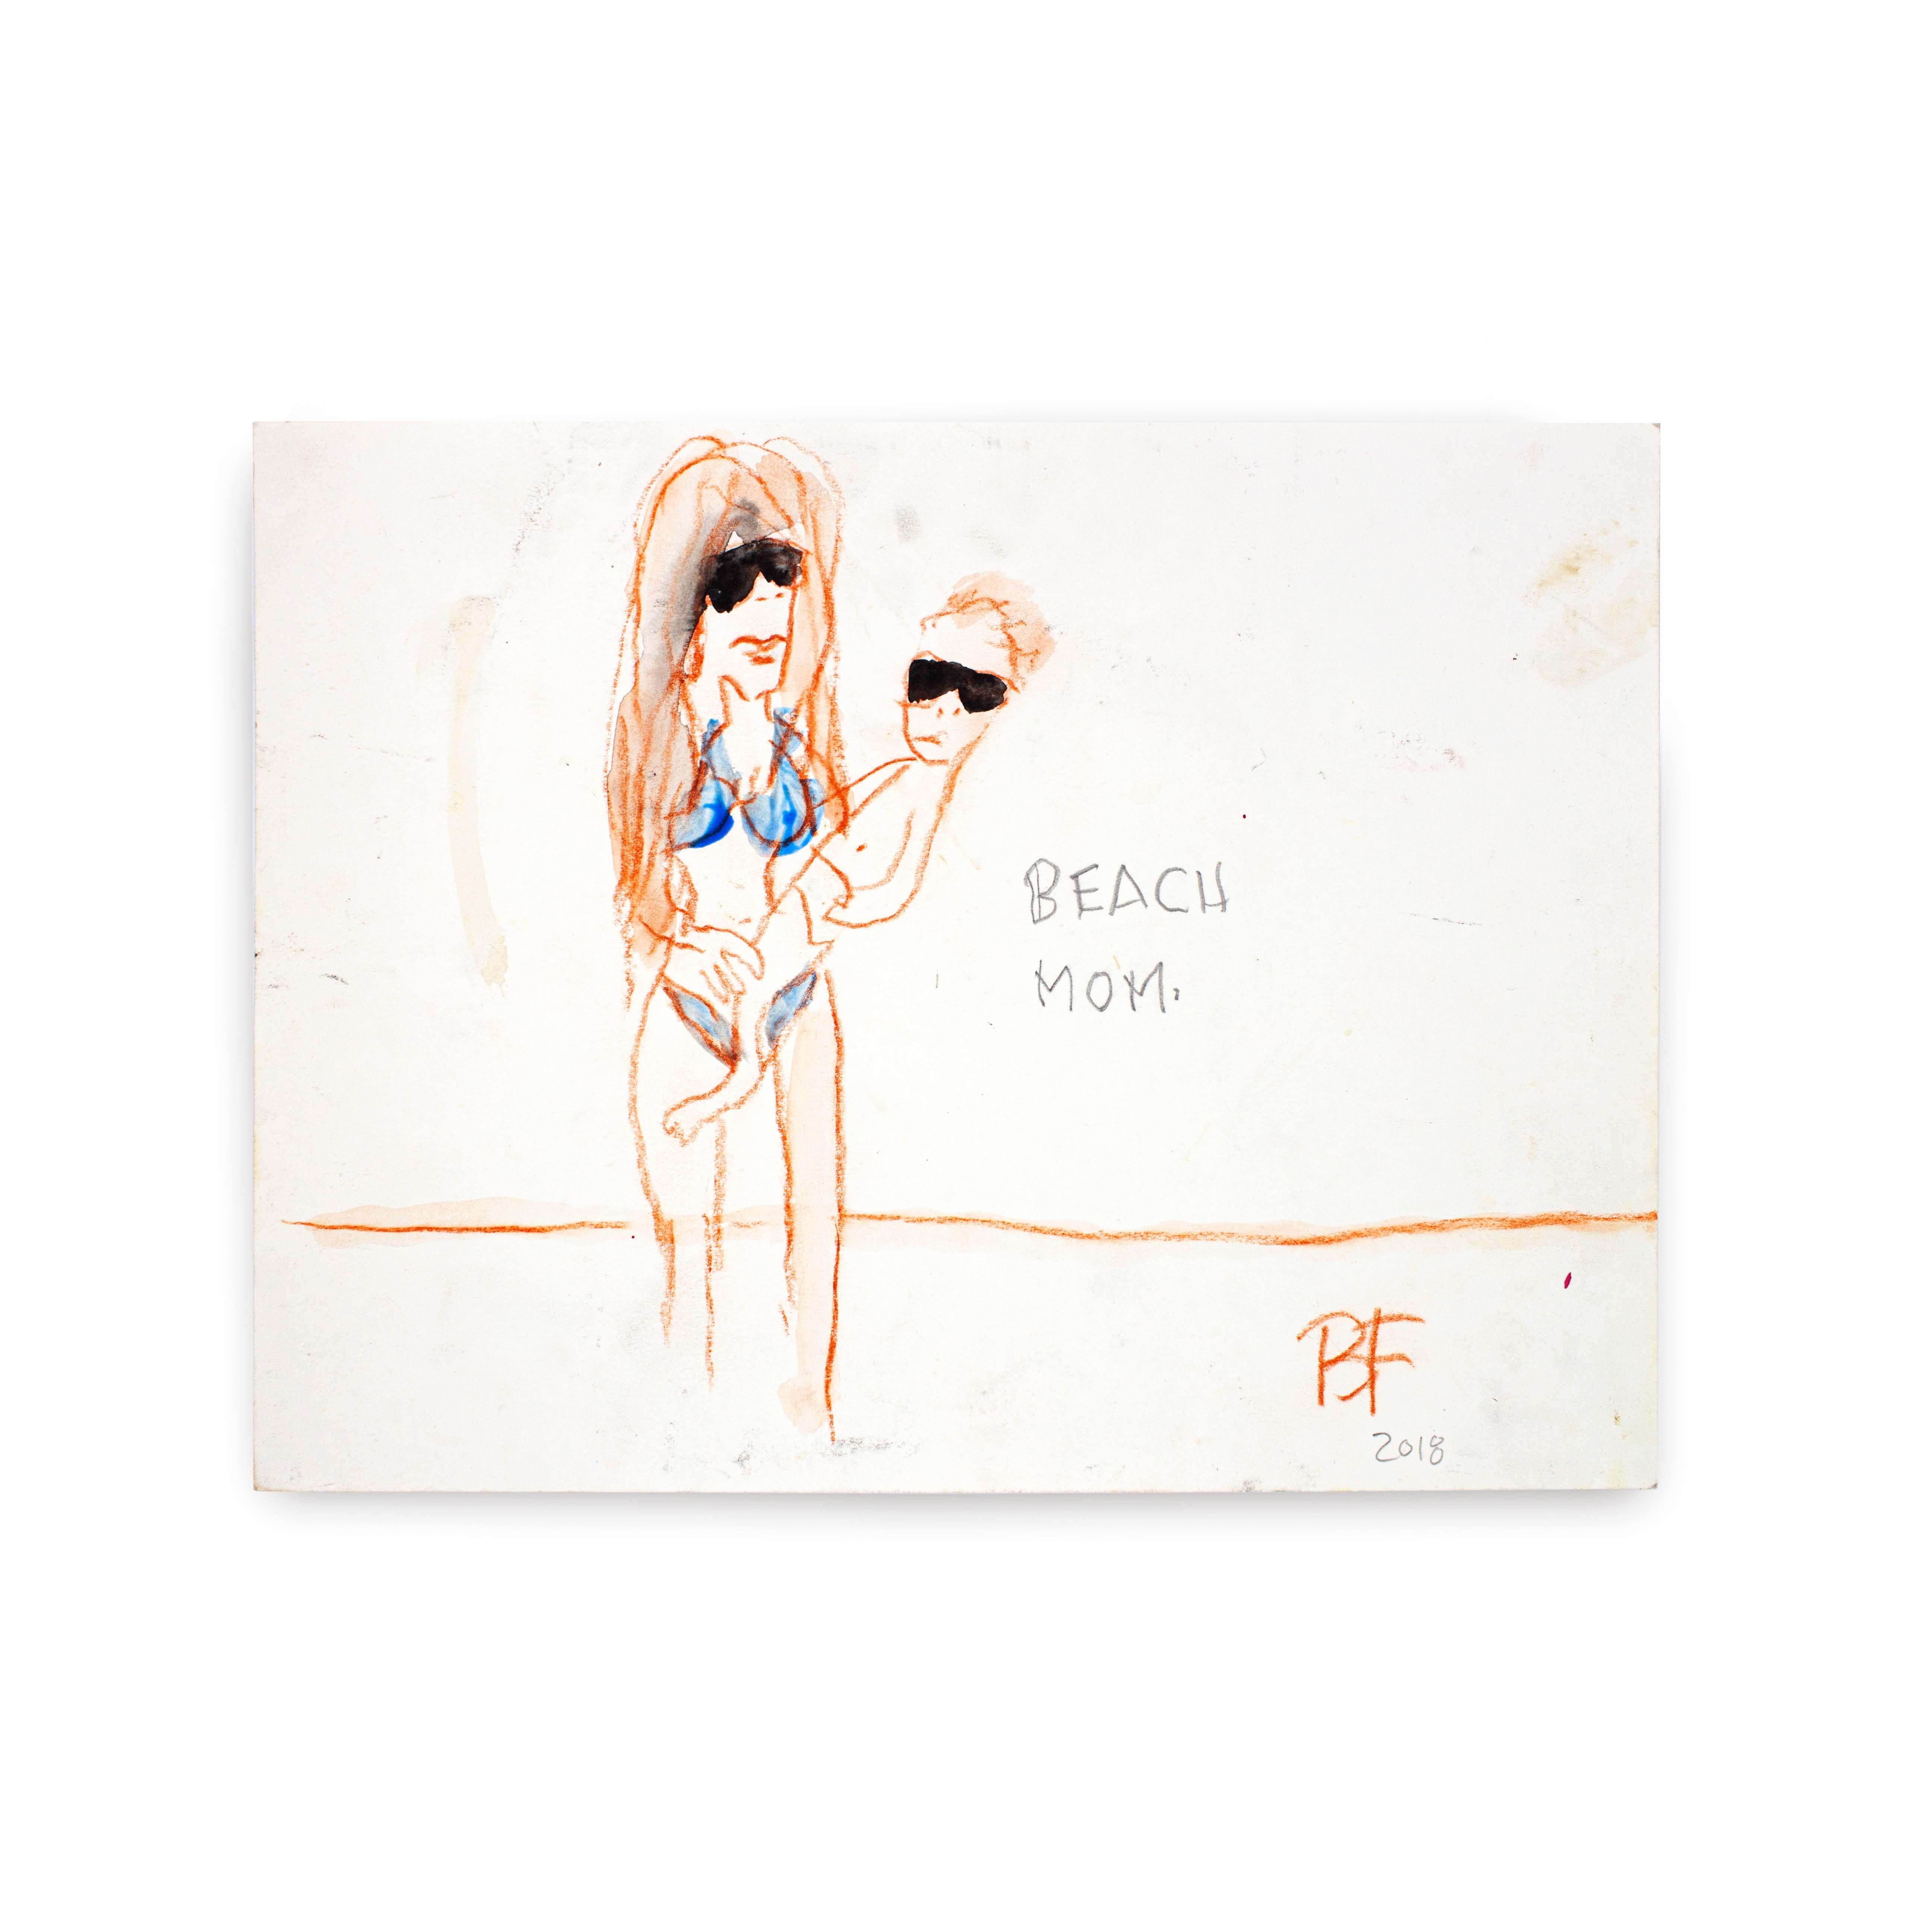 Maman de la plage, 2018

Graphite, fusain couleur rouille et aquarelle japonaise sur papier par l'artiste Brad Fisher. Non encadré.

9 × 12 pouces

L'expédition n'est pas incluse. Voir nos politiques d'expédition. Veuillez nous contacter pour